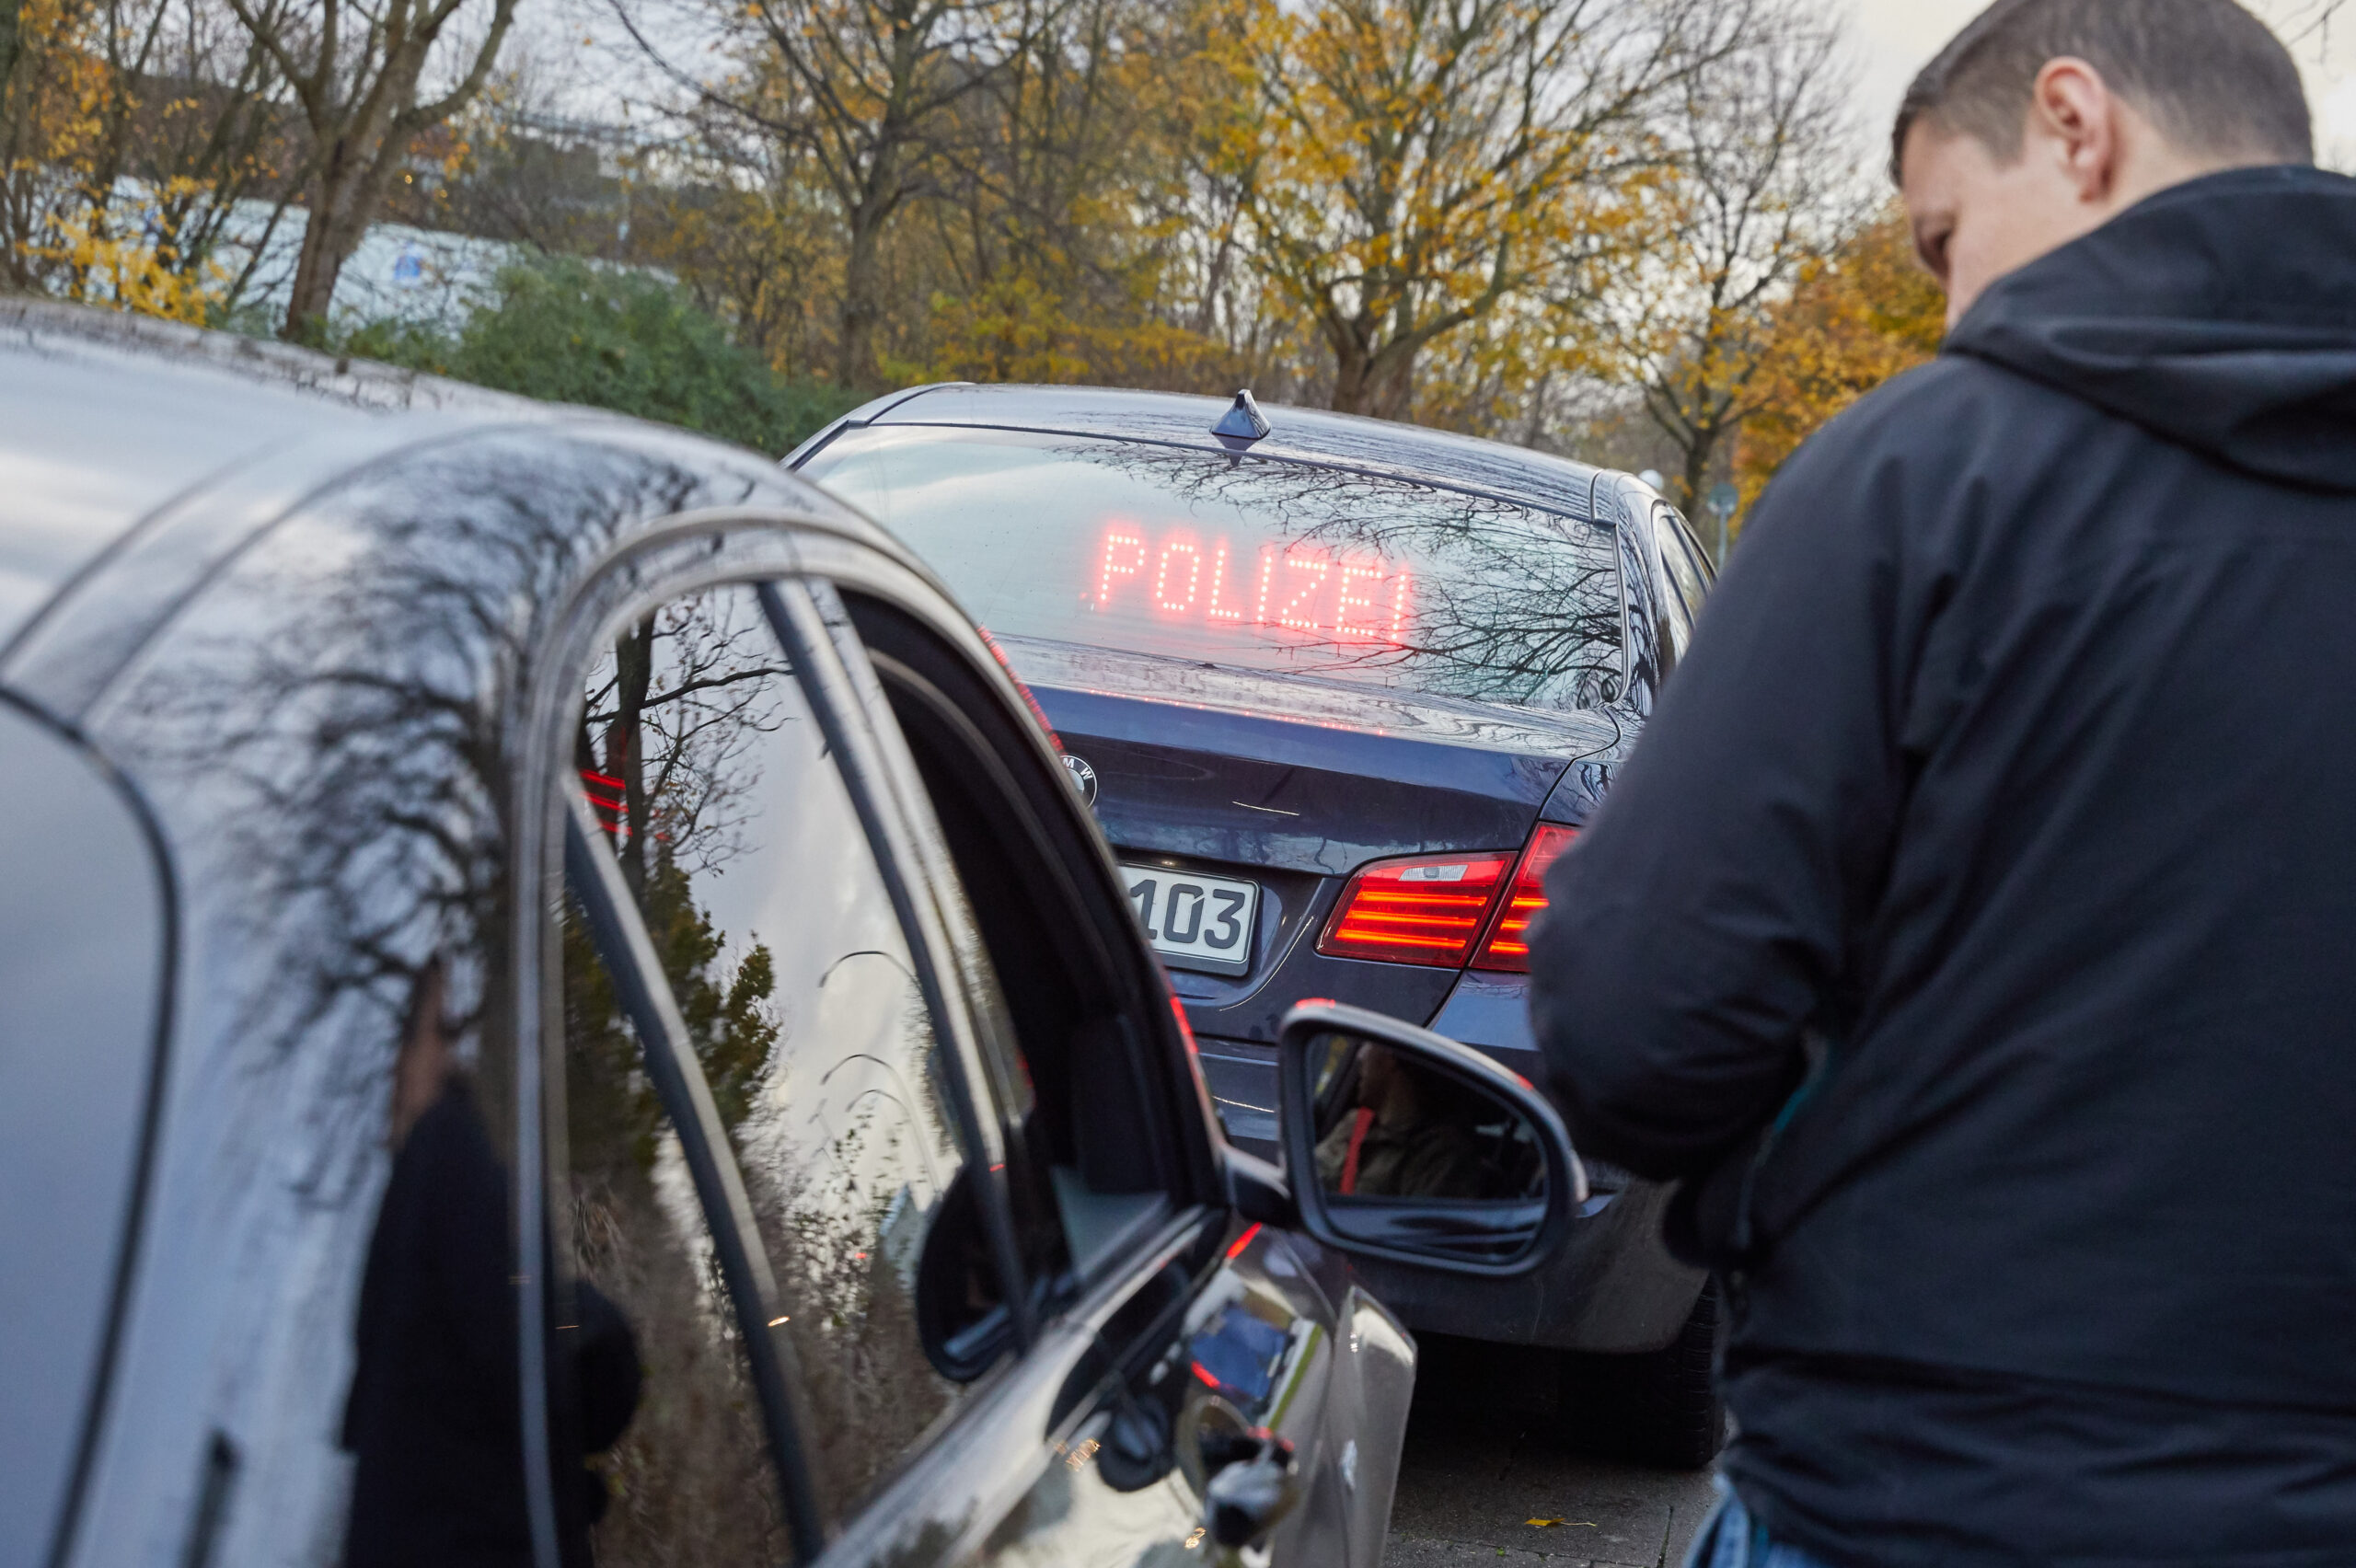 Dienstgruppe Auto-Poser der Polizei stellt drei hochwertige Autos in Hamburg sicher. Alle waren zu laut